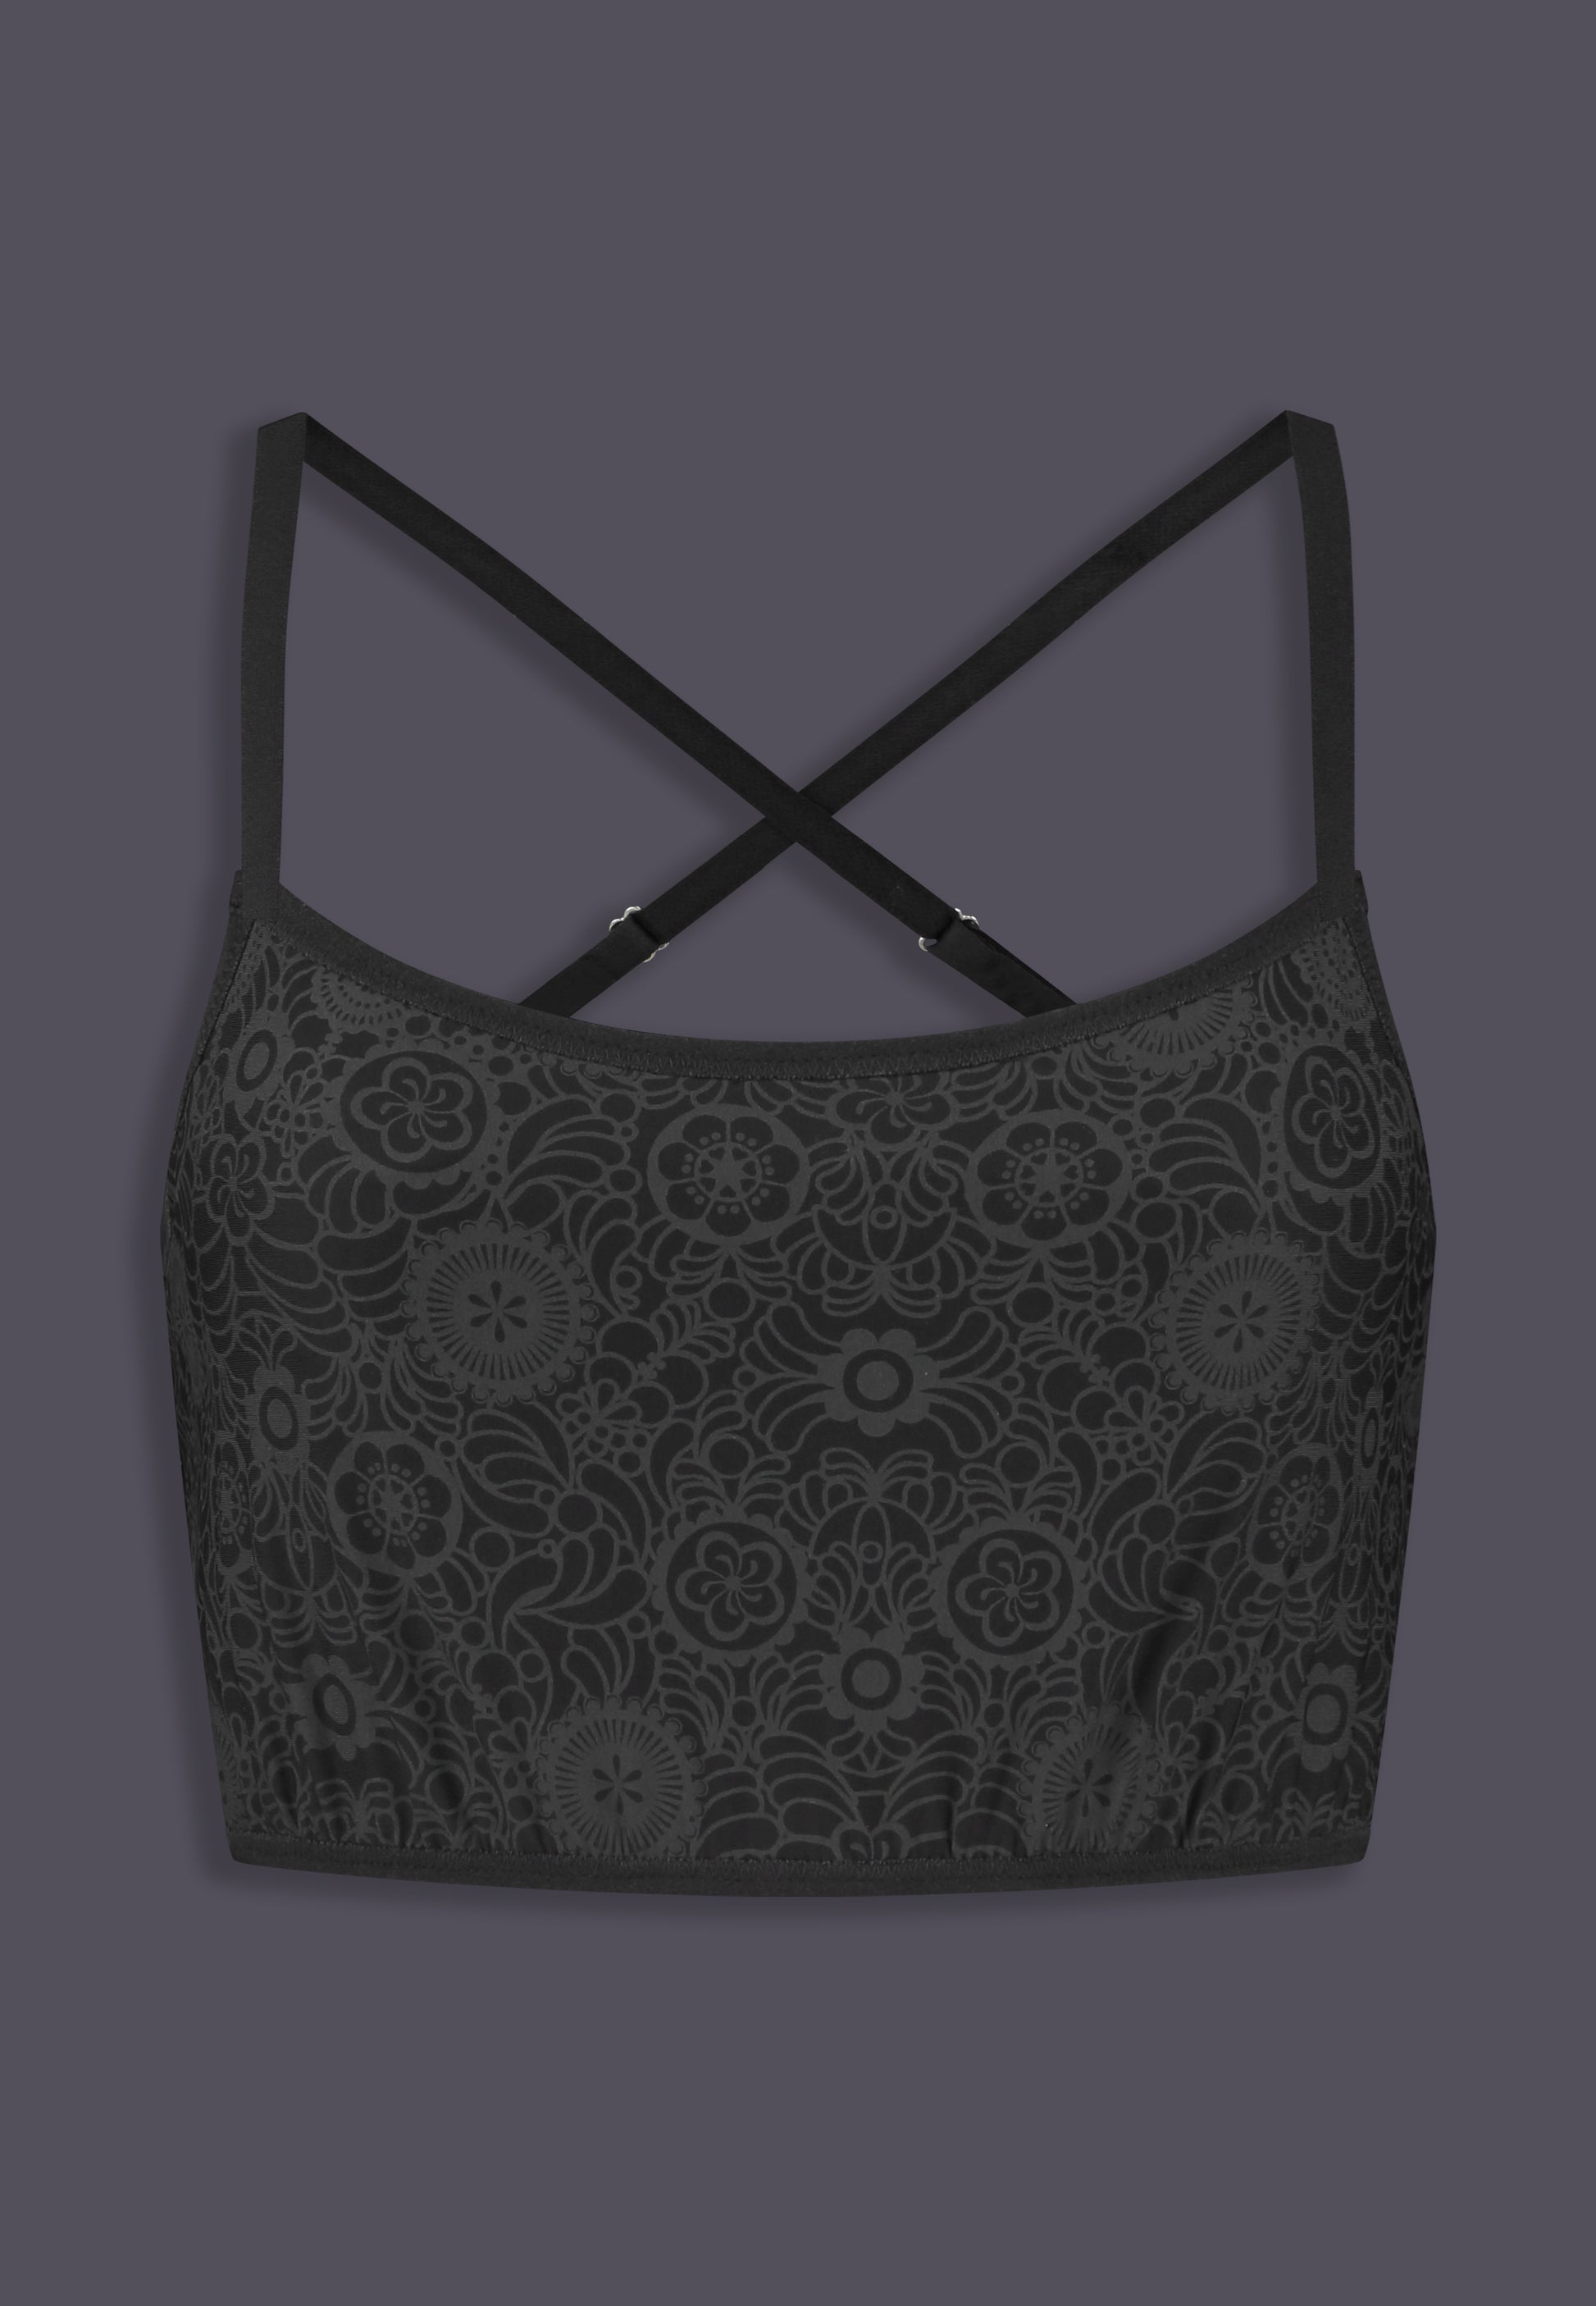 Bikinitop Advanced black grey floral print, front view